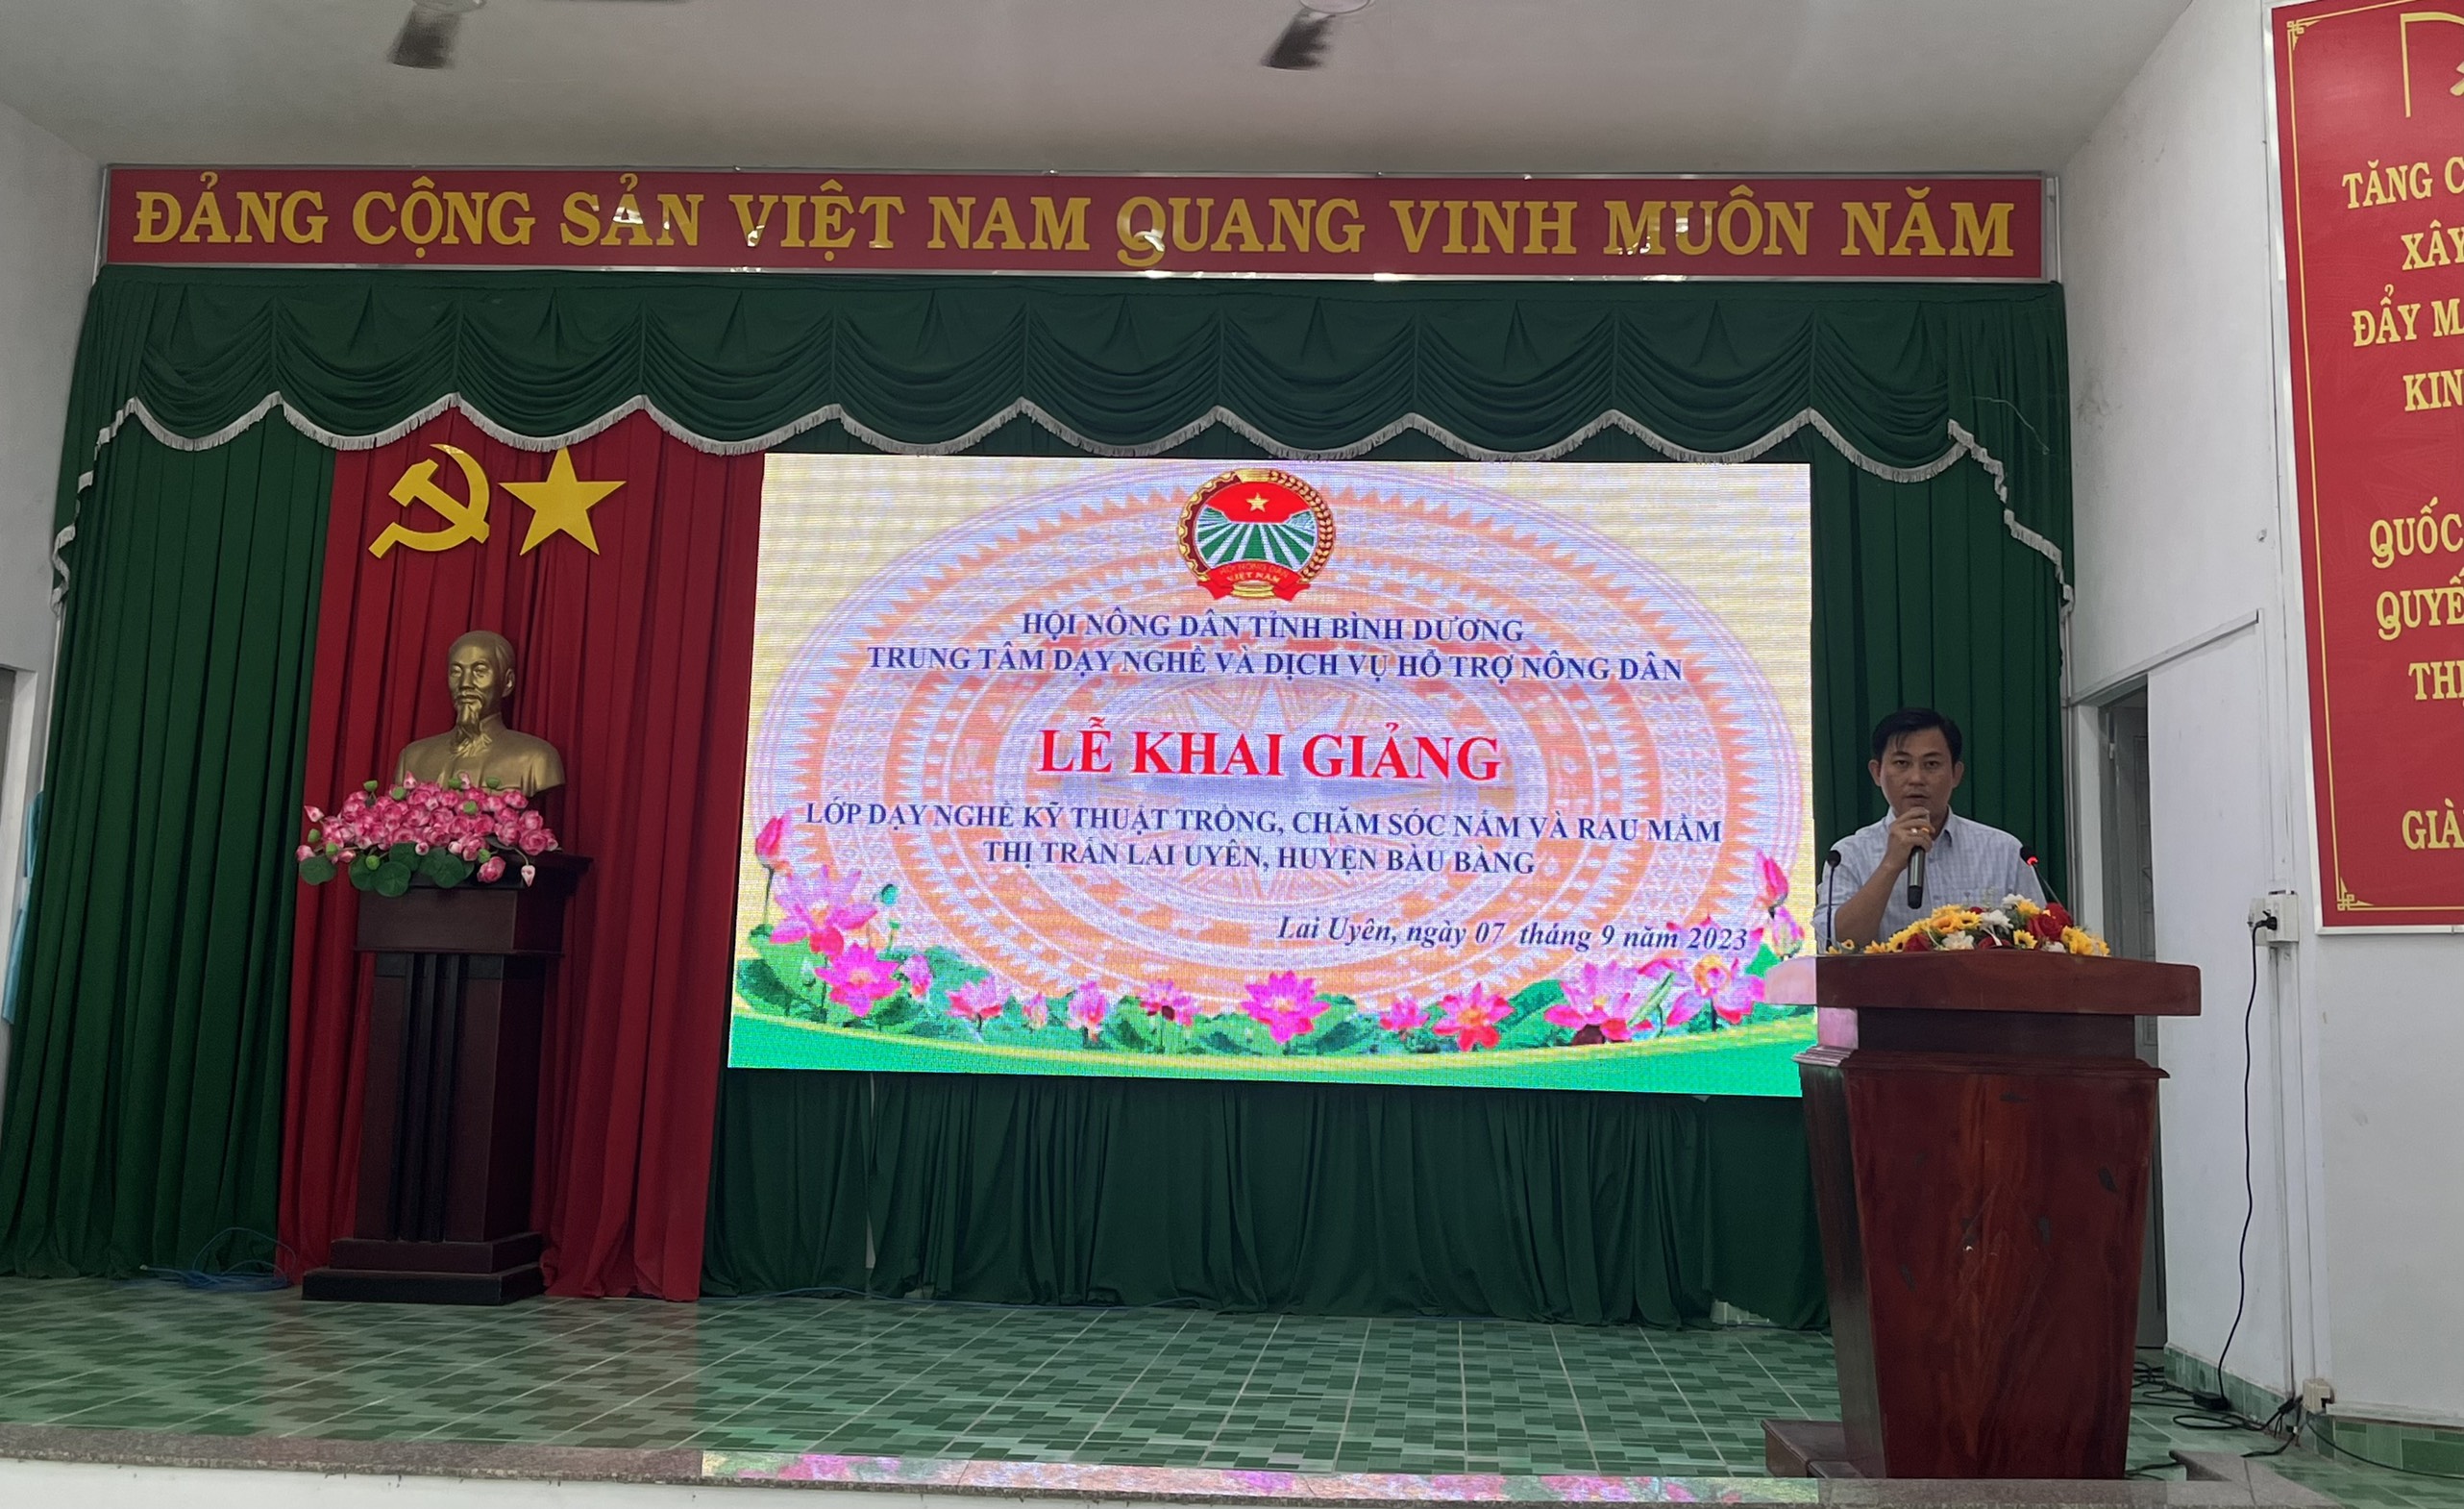 Thị trấn Lai Uyên khai giảng lớp dạy nghề kỹ thuật trồng, chăm sóc nấm và rau mầm năm 2023